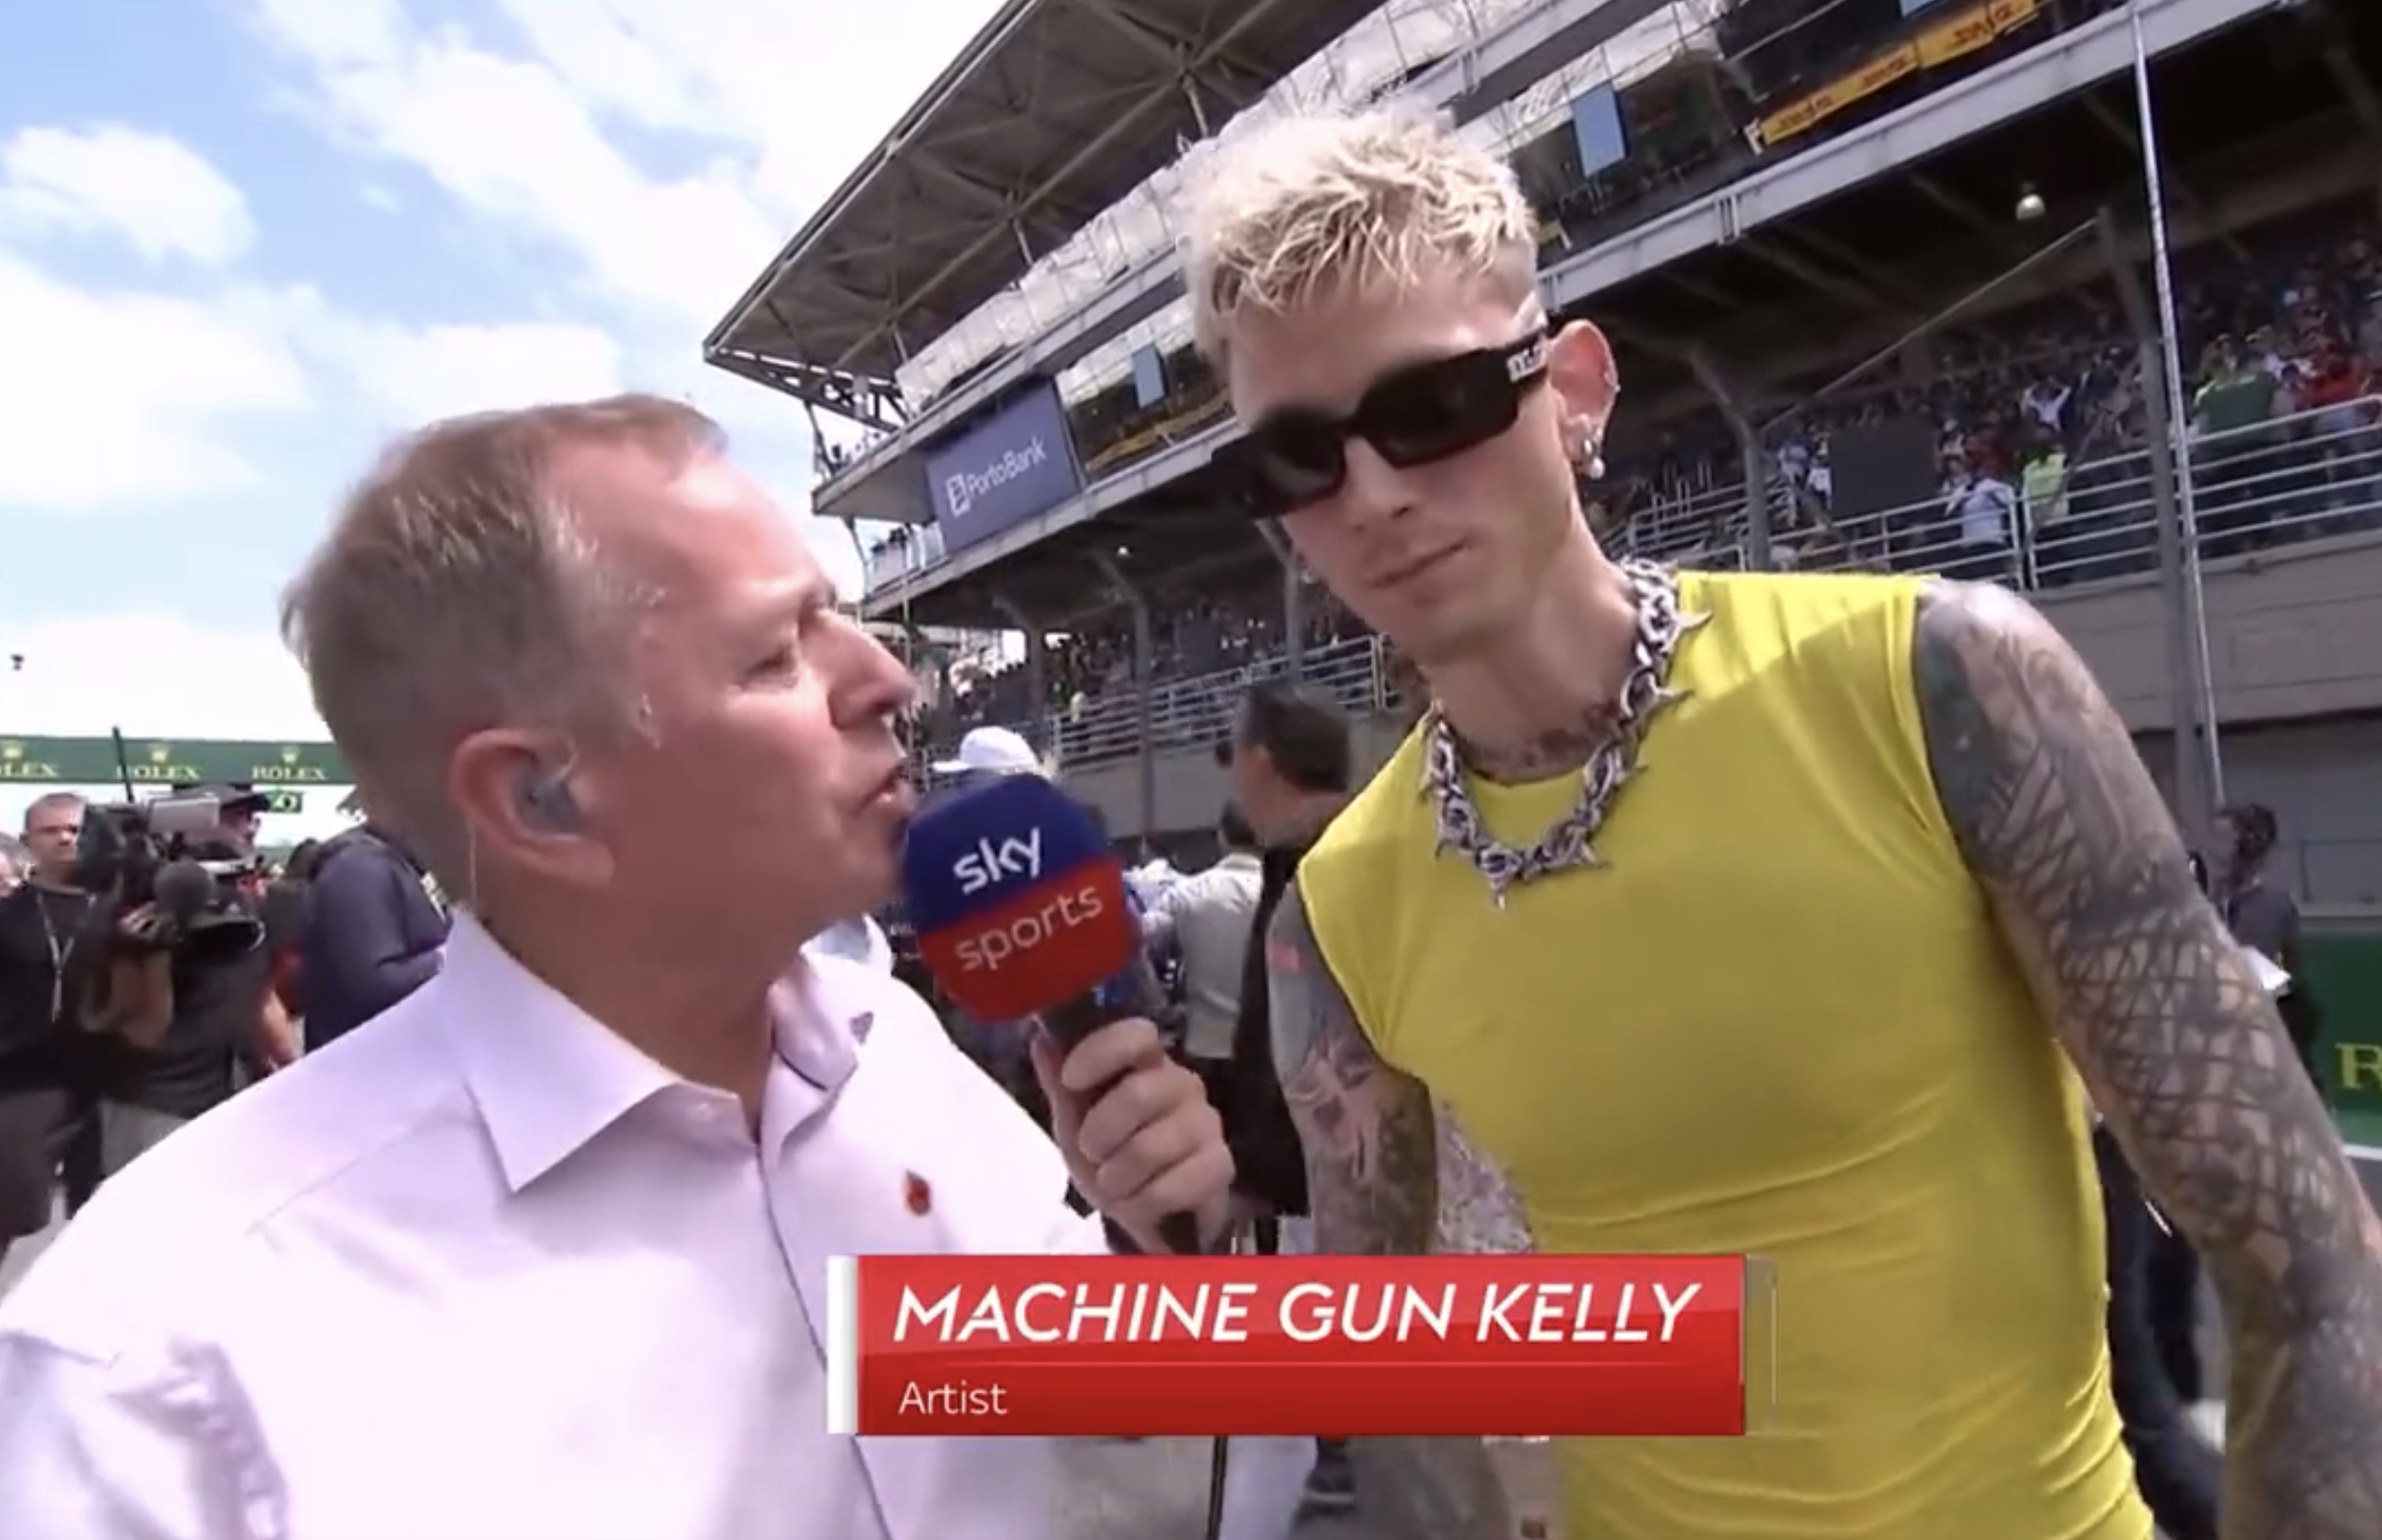 Martin interviewing Machine Gun Kelly